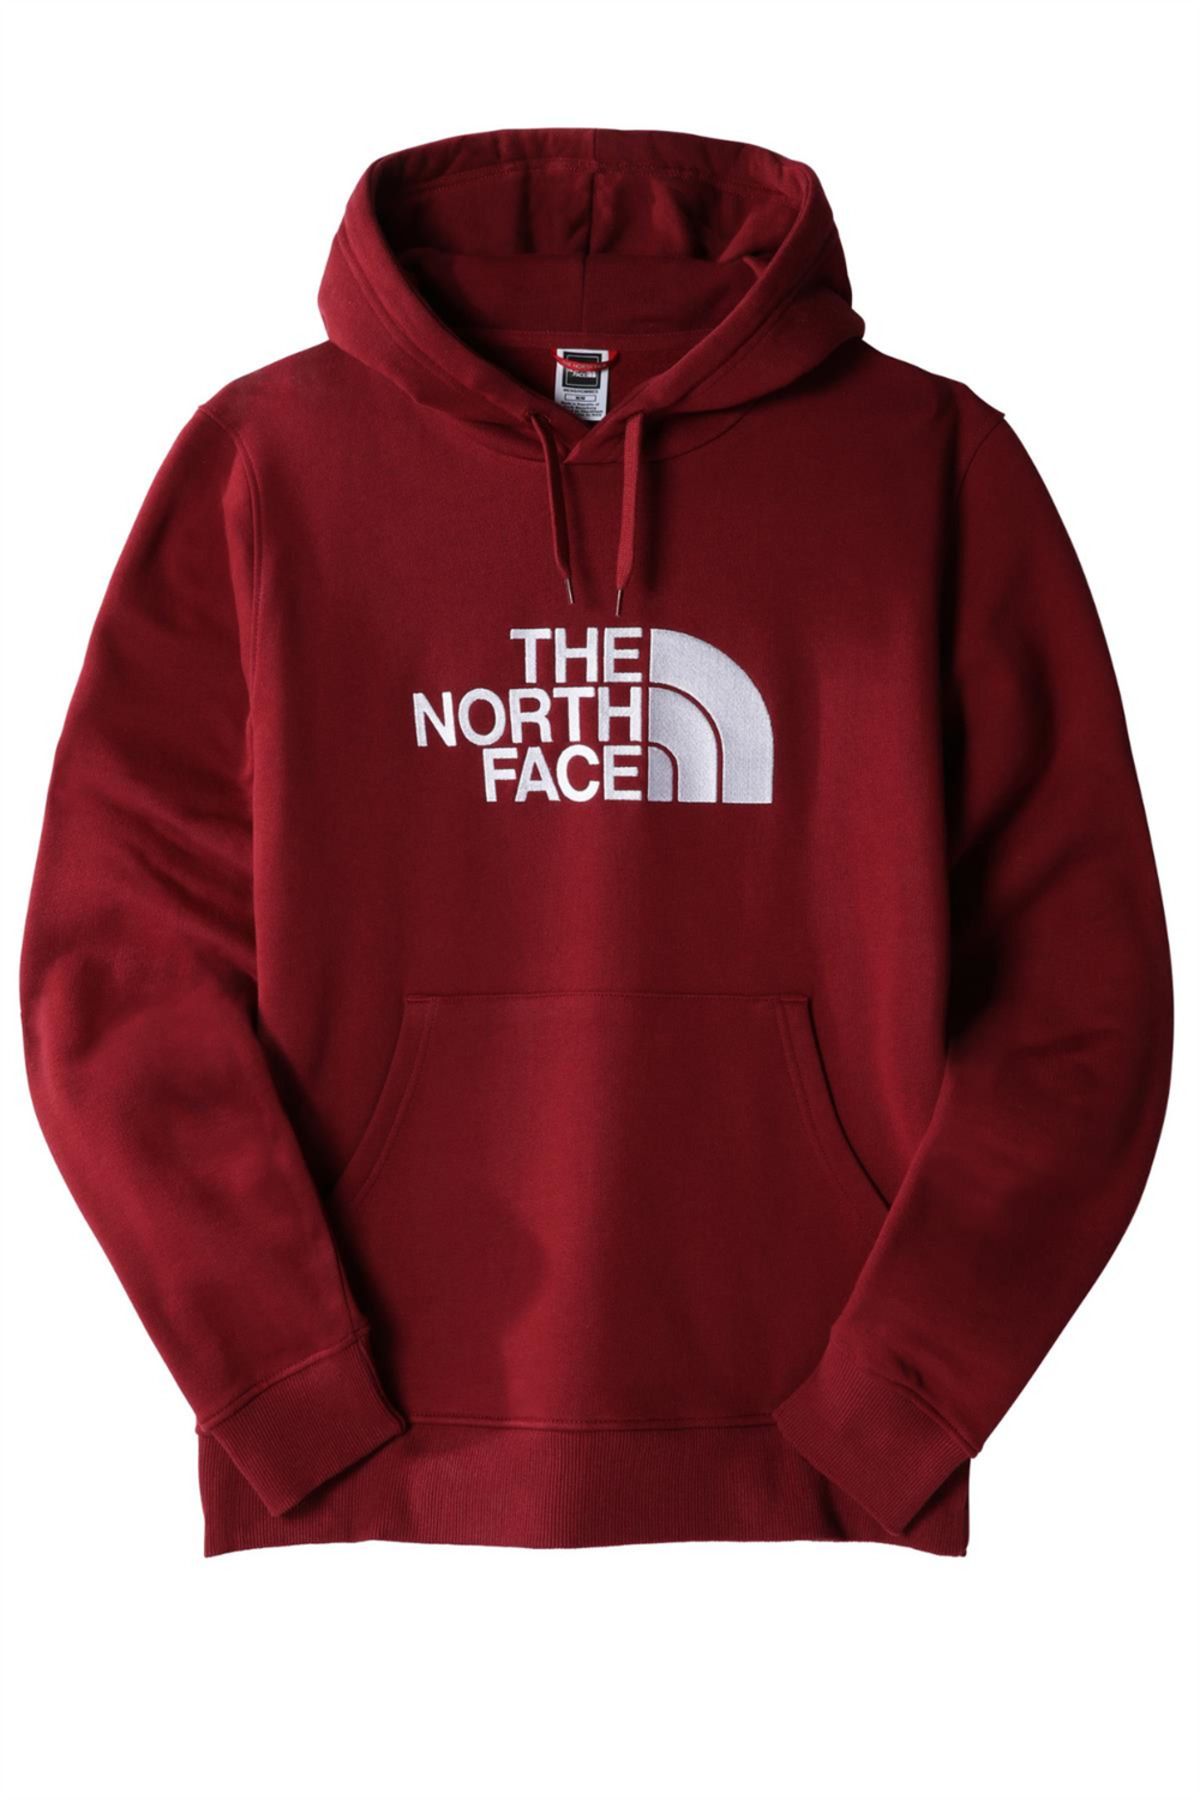 The North Face Drew Peak Pullover Hoodie Kapüşonlu Erkek Sweatshirt Bordo